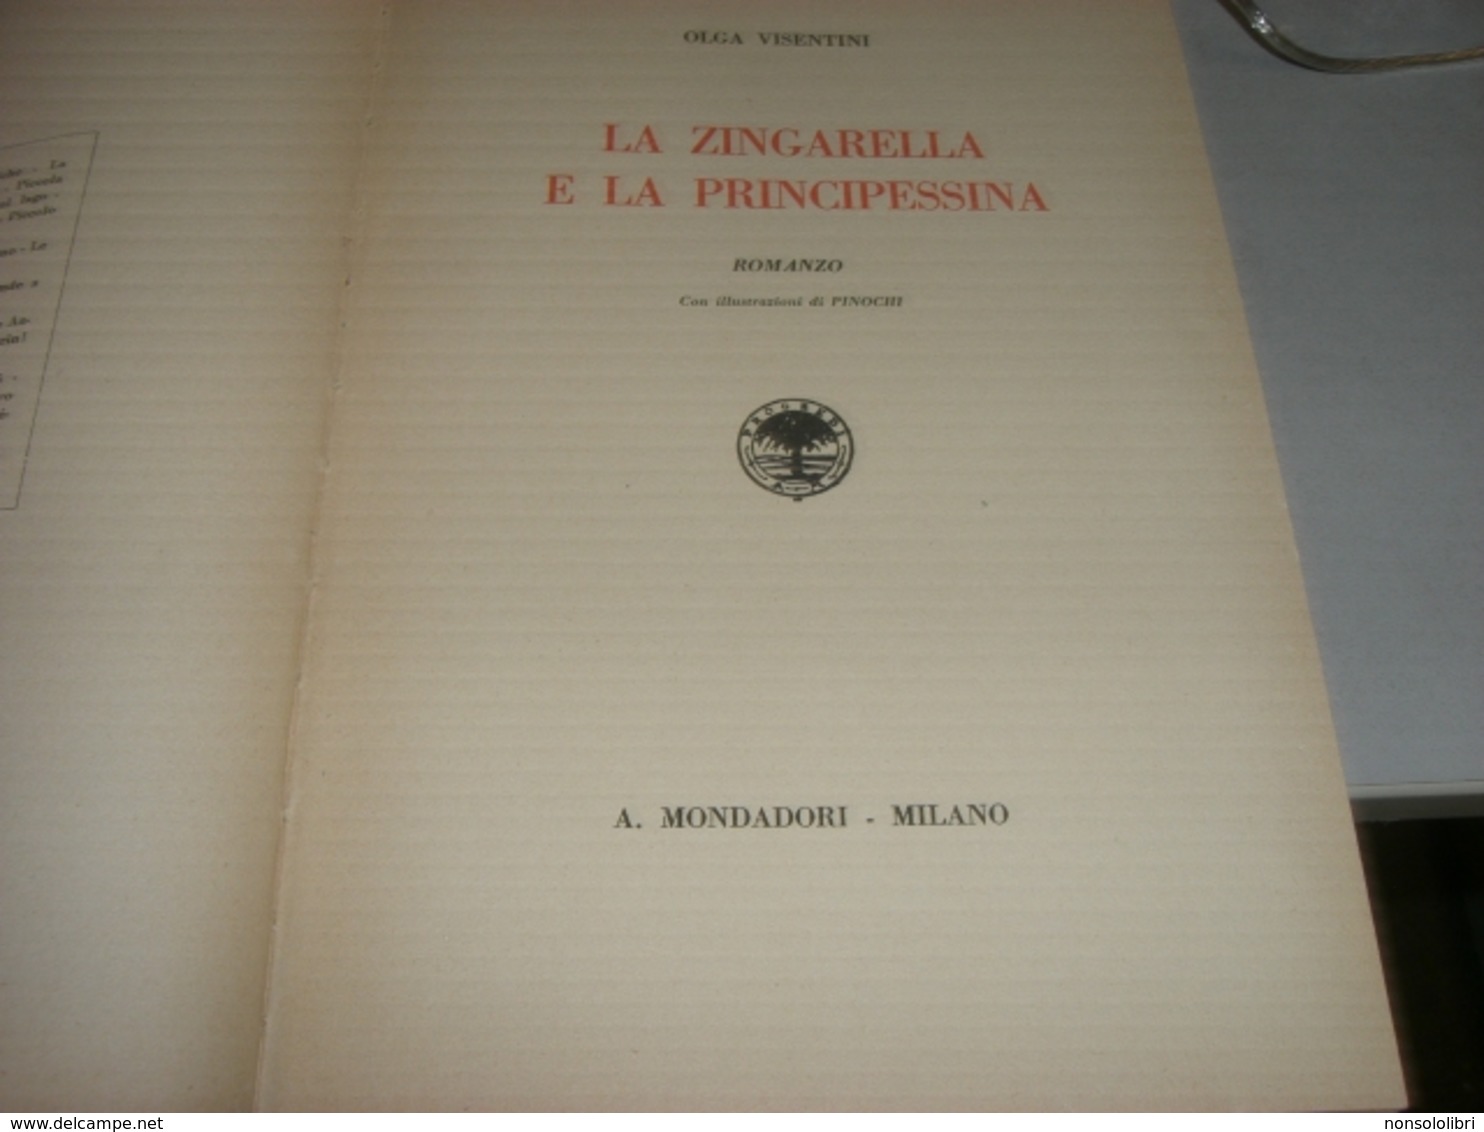 LIBRO LA ZINGARELLA E LA PRINCIPESSINA -OLGA VISENTINI 1926 ILLUSTRATO DA PINOCHI - Libri Antichi